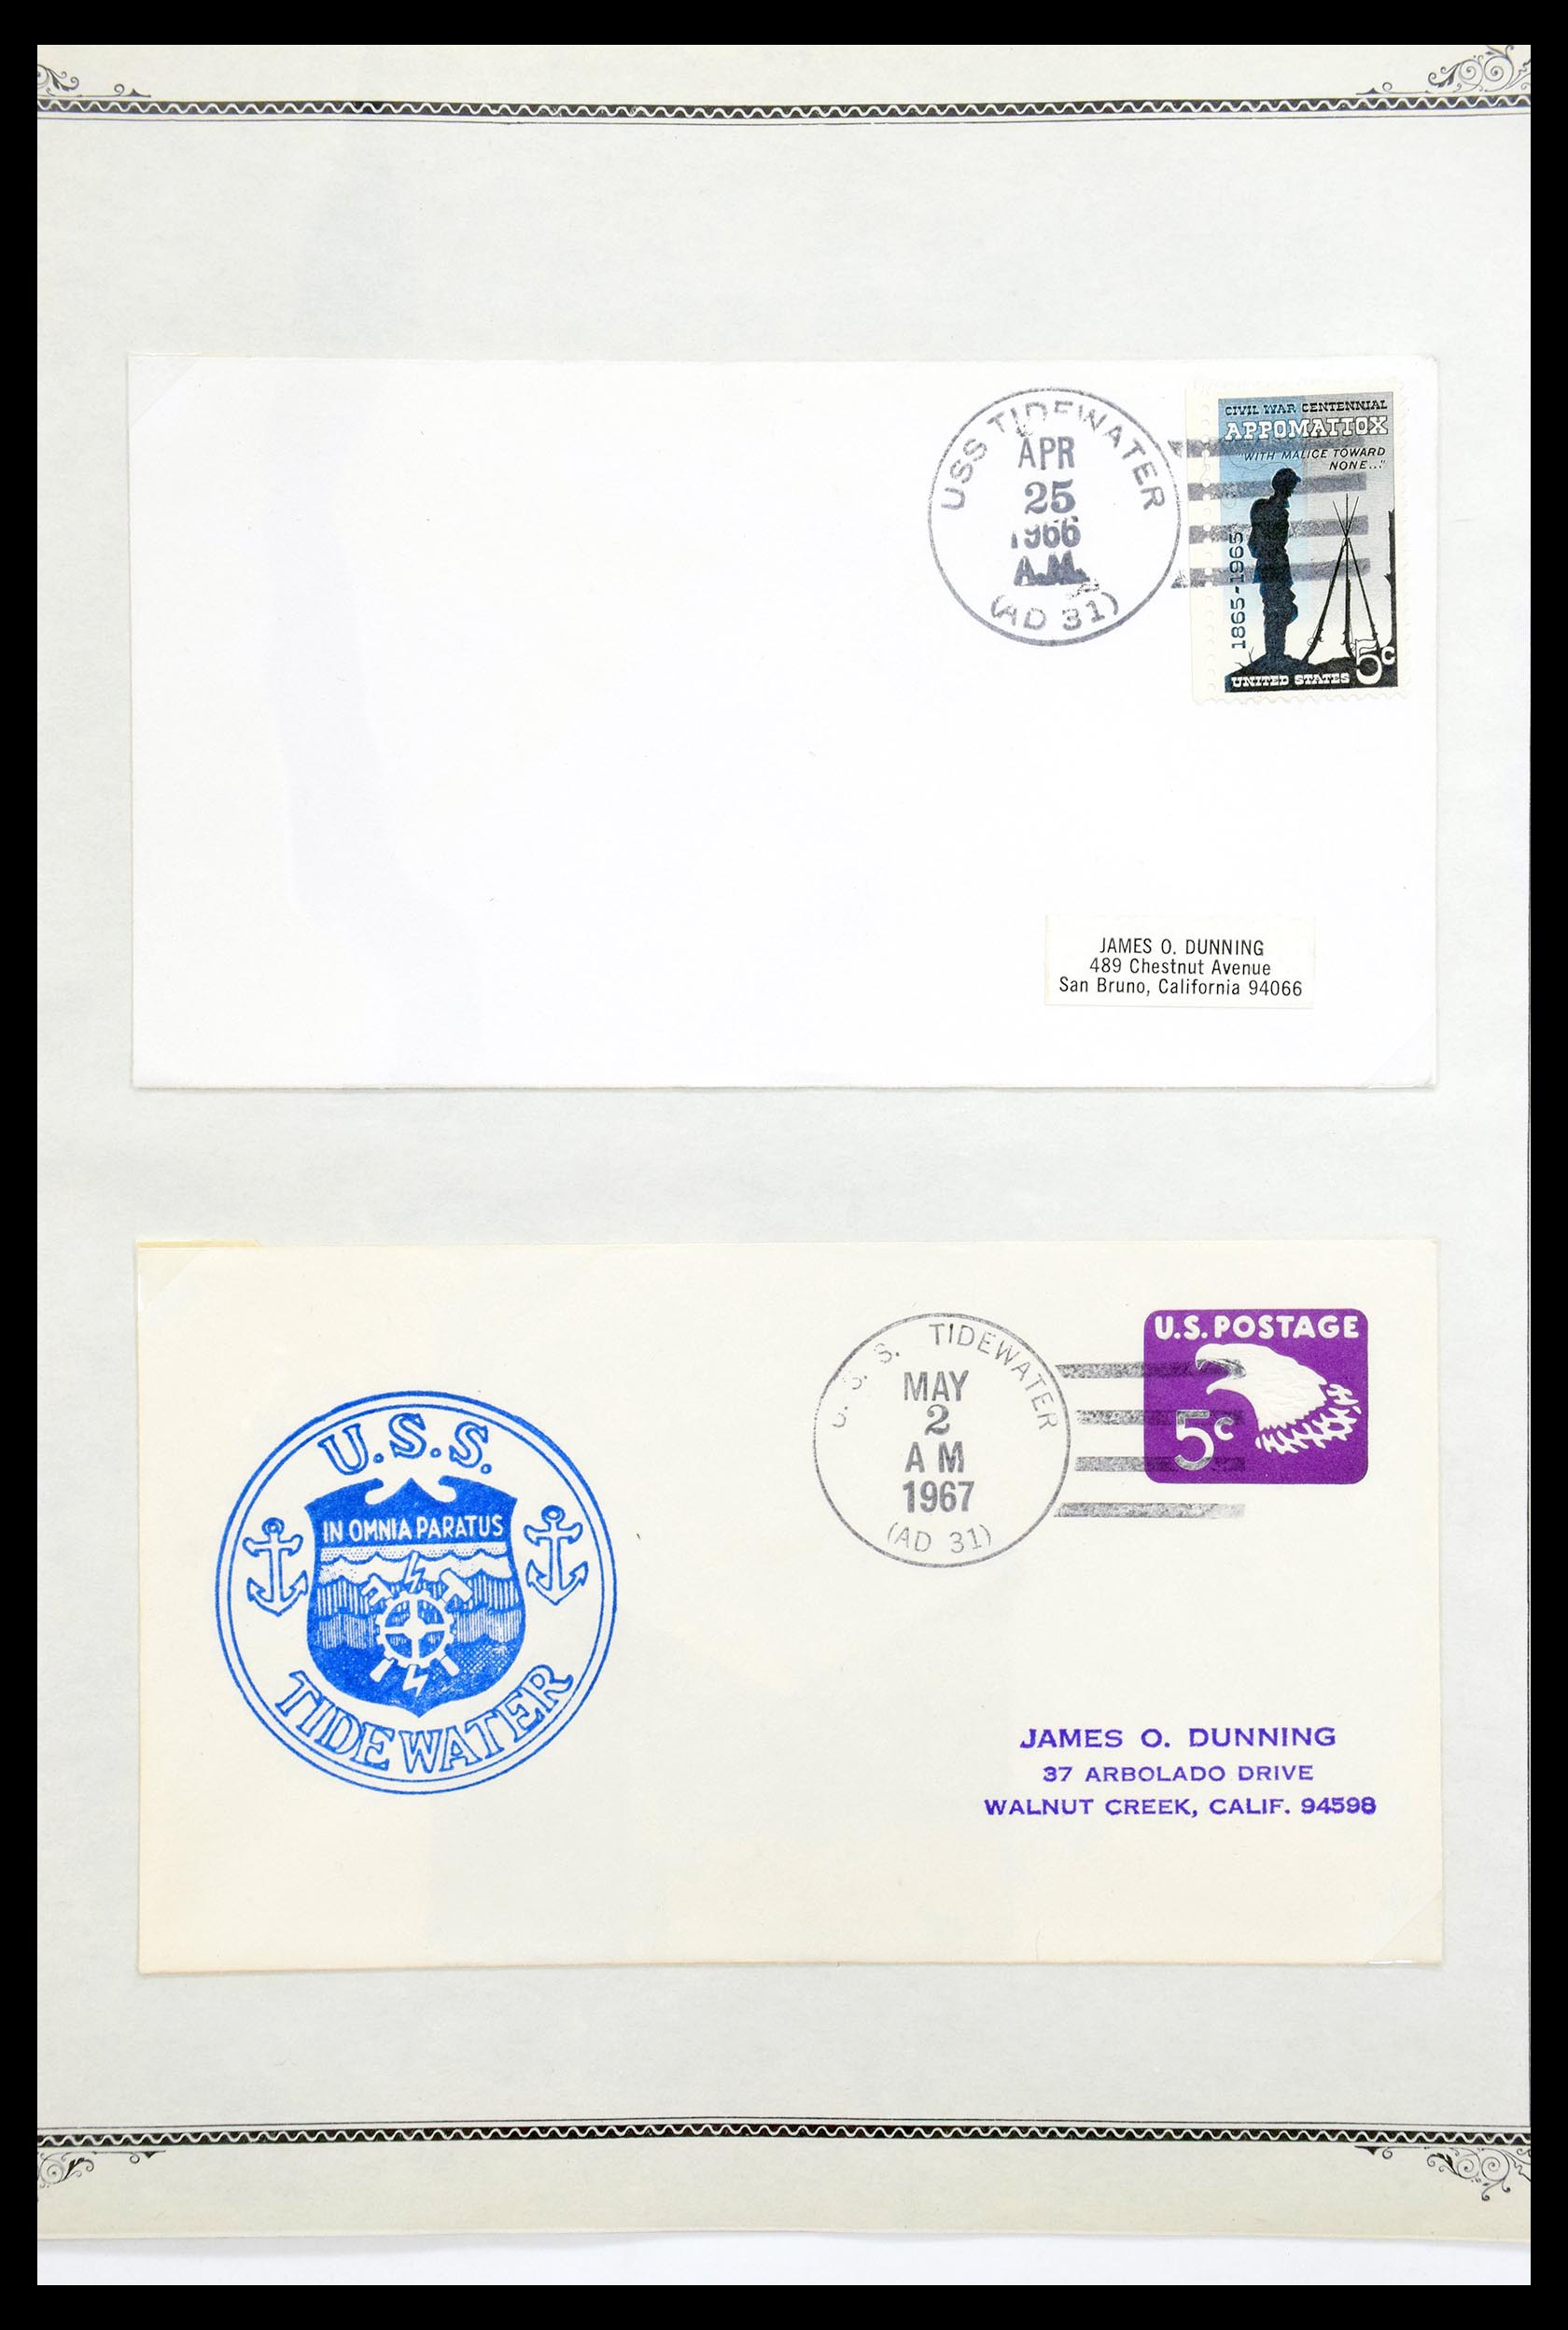 30341 011 - 30341 USA scheepspost brieven 1930-1970.